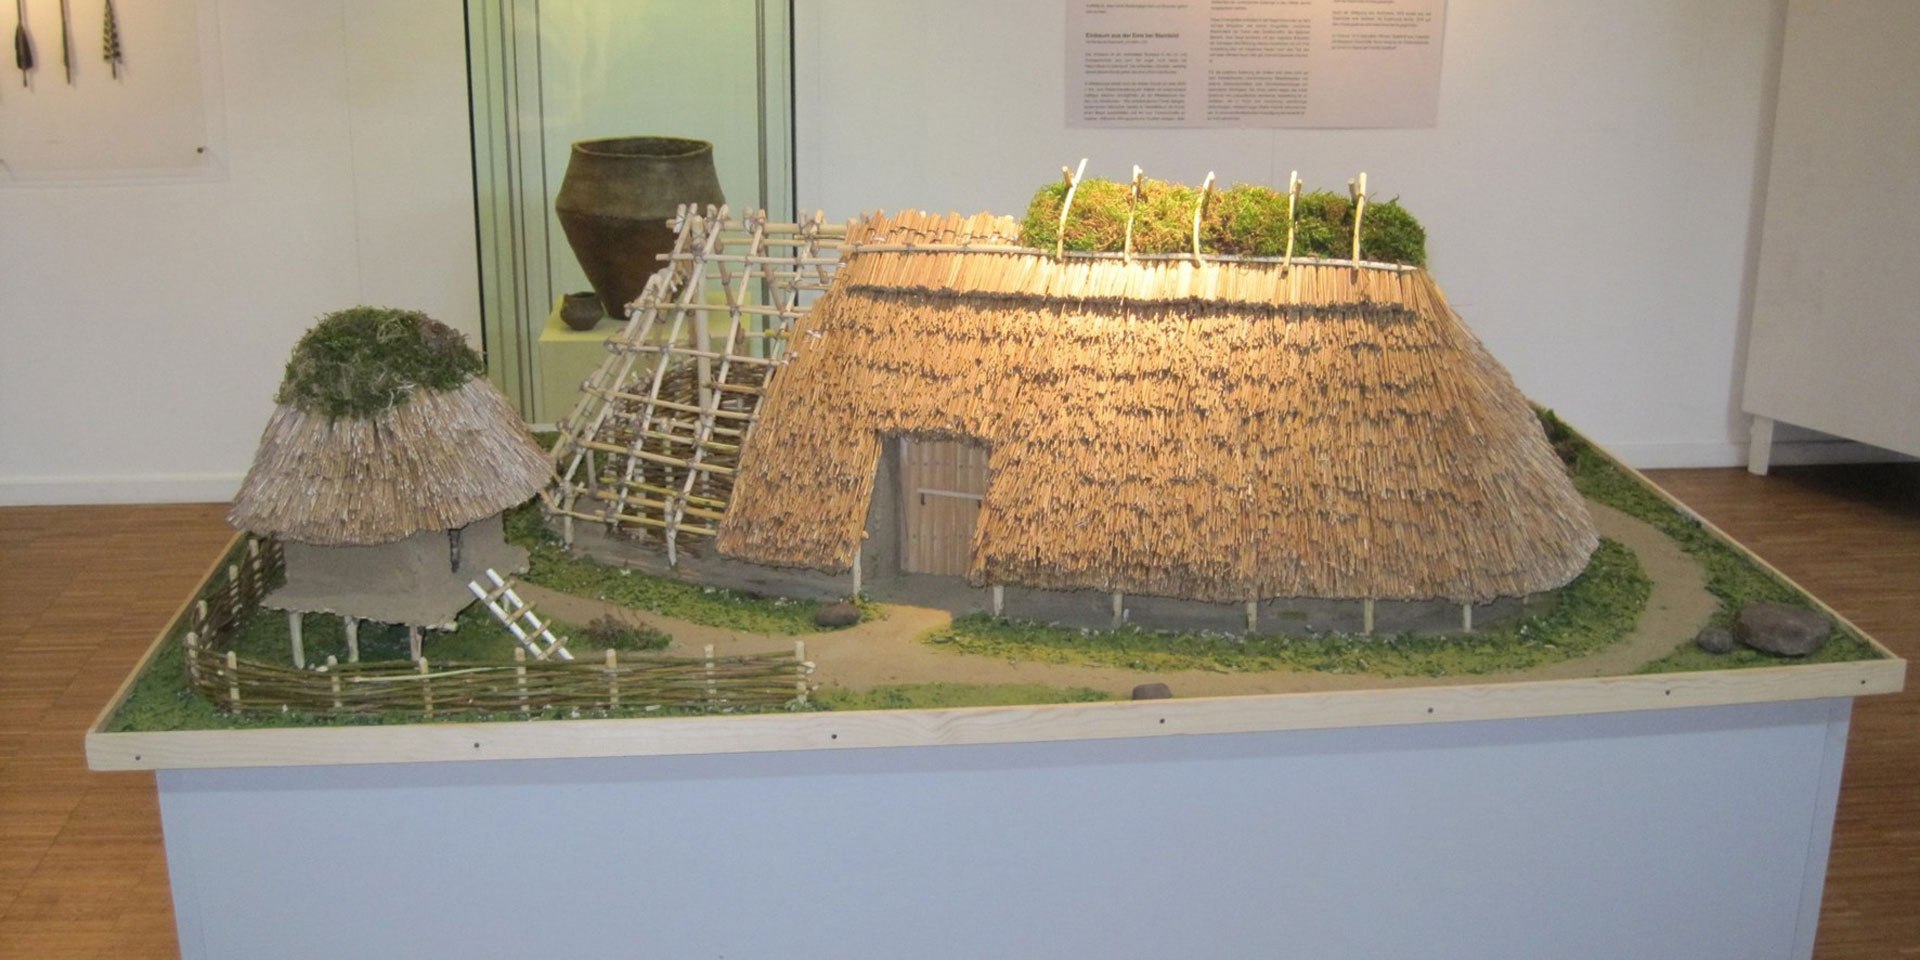 Wohnen vor 2000 Jahren - ein Hausmodell der Eisenzeit, © Ausstellungszentrum Archäologie Meppen